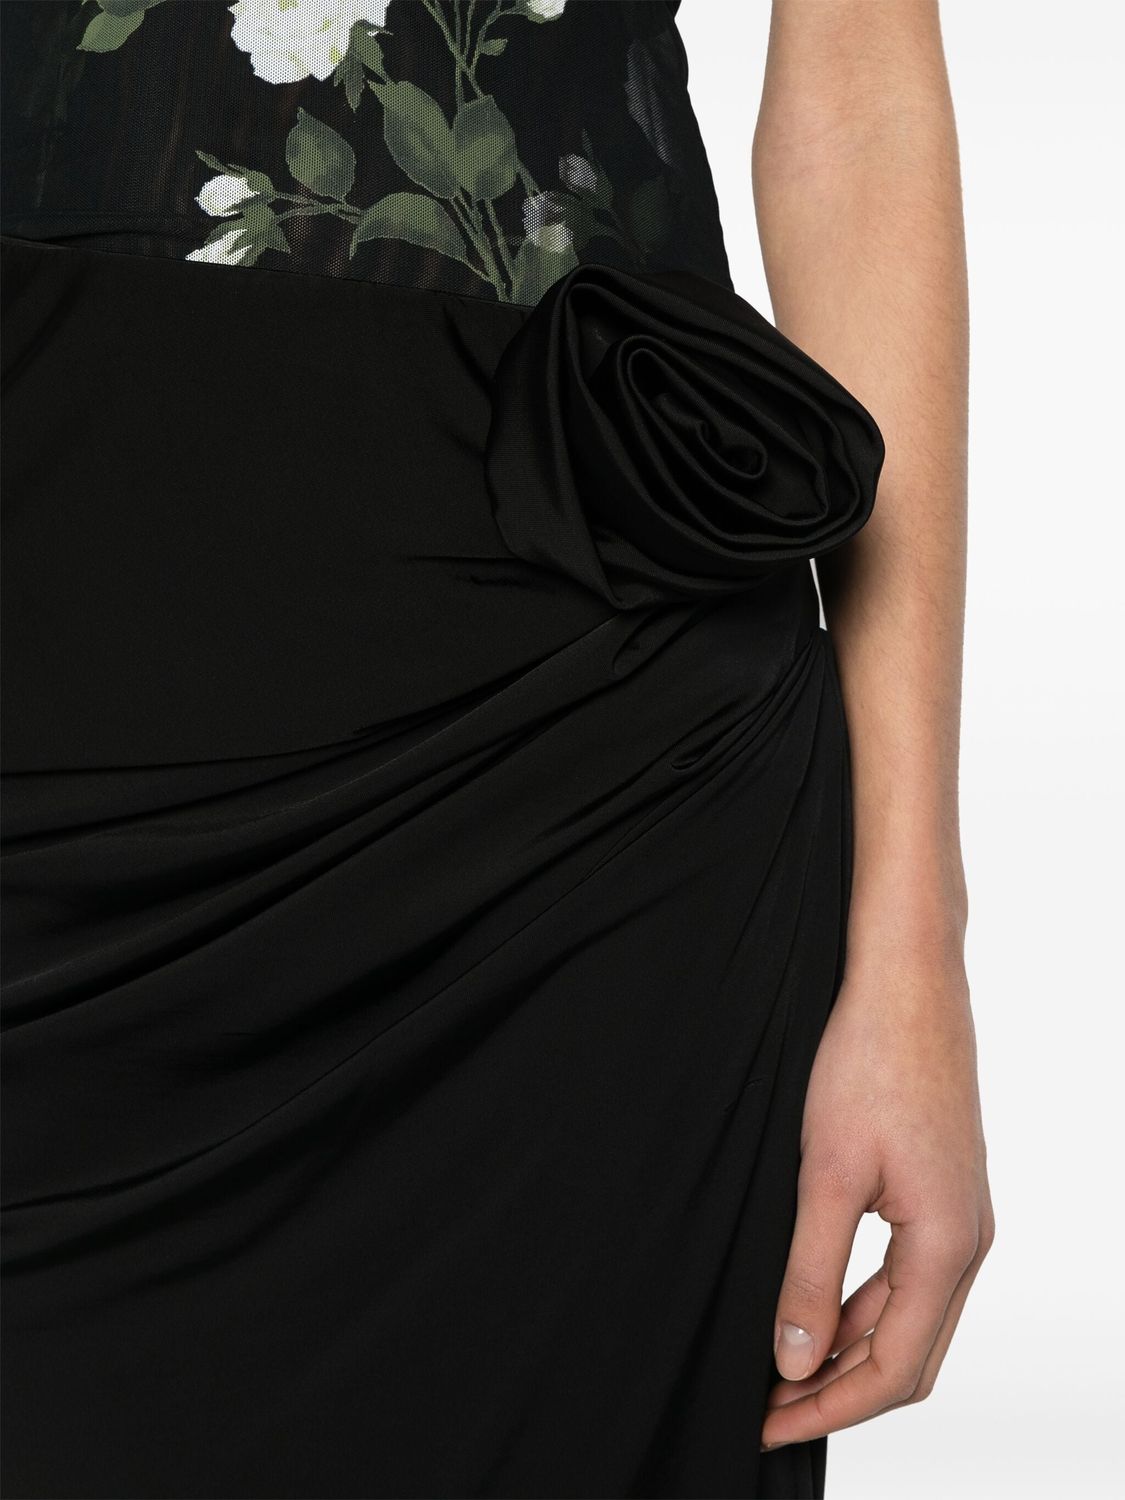 芒果布婷黑色花卉裝飾裙